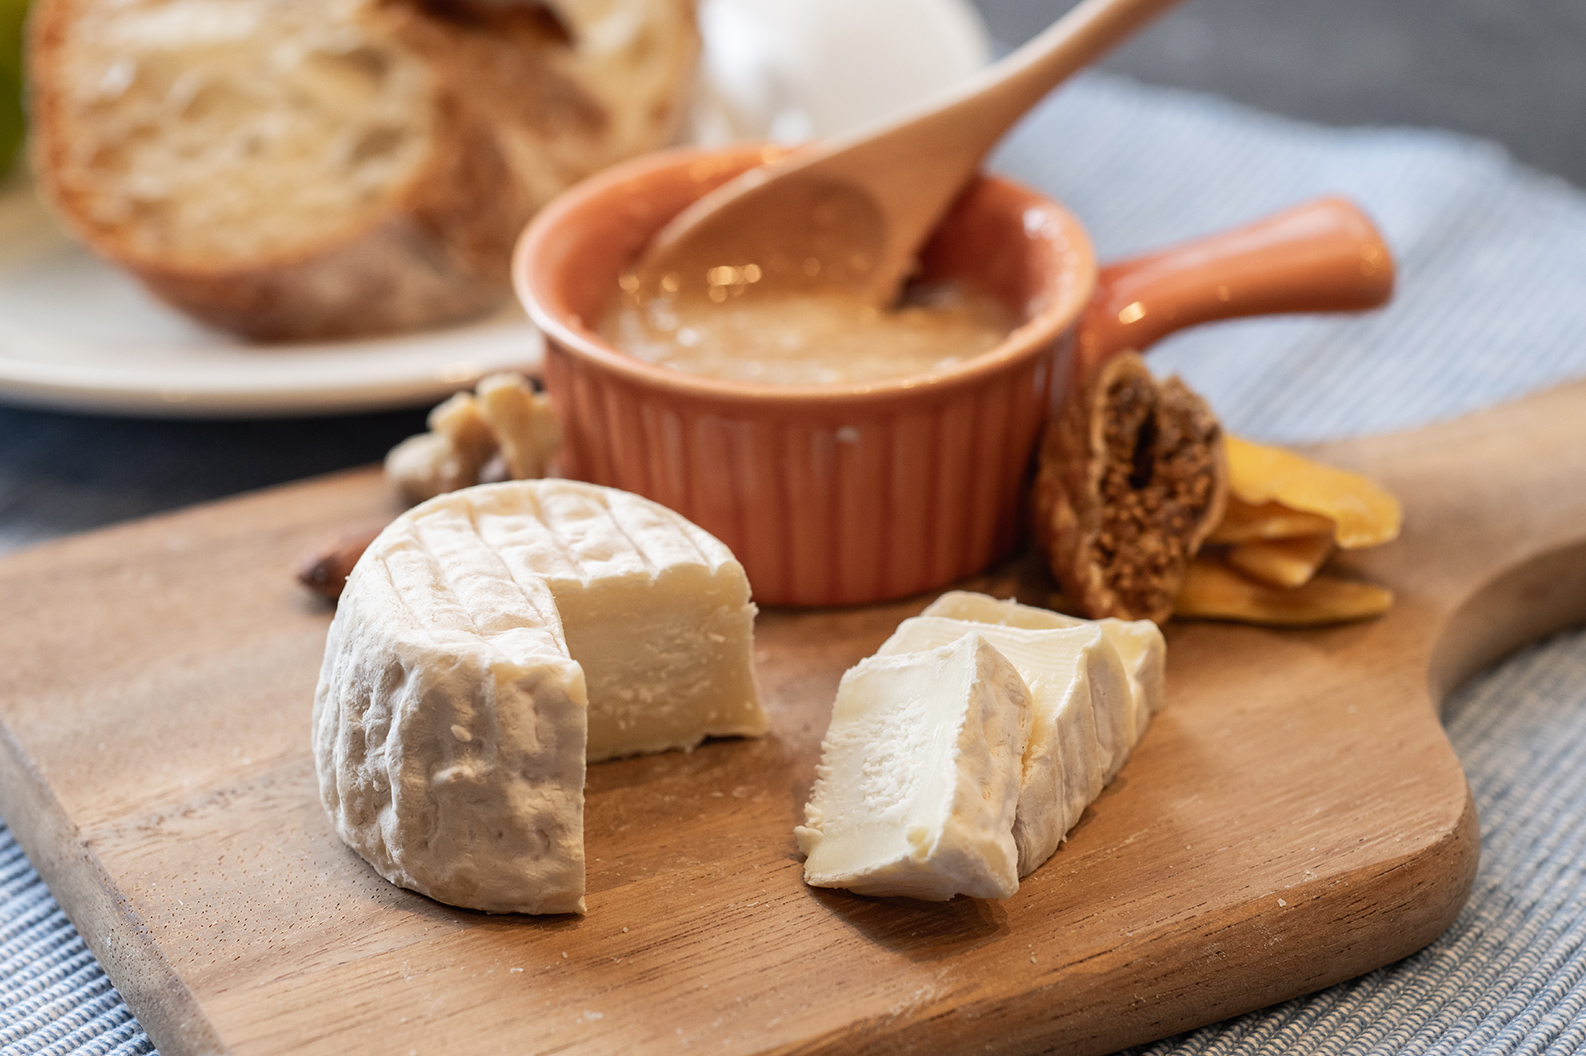 シェーブルチーズ「クロタン」× 酒粕ハニーディップの写真